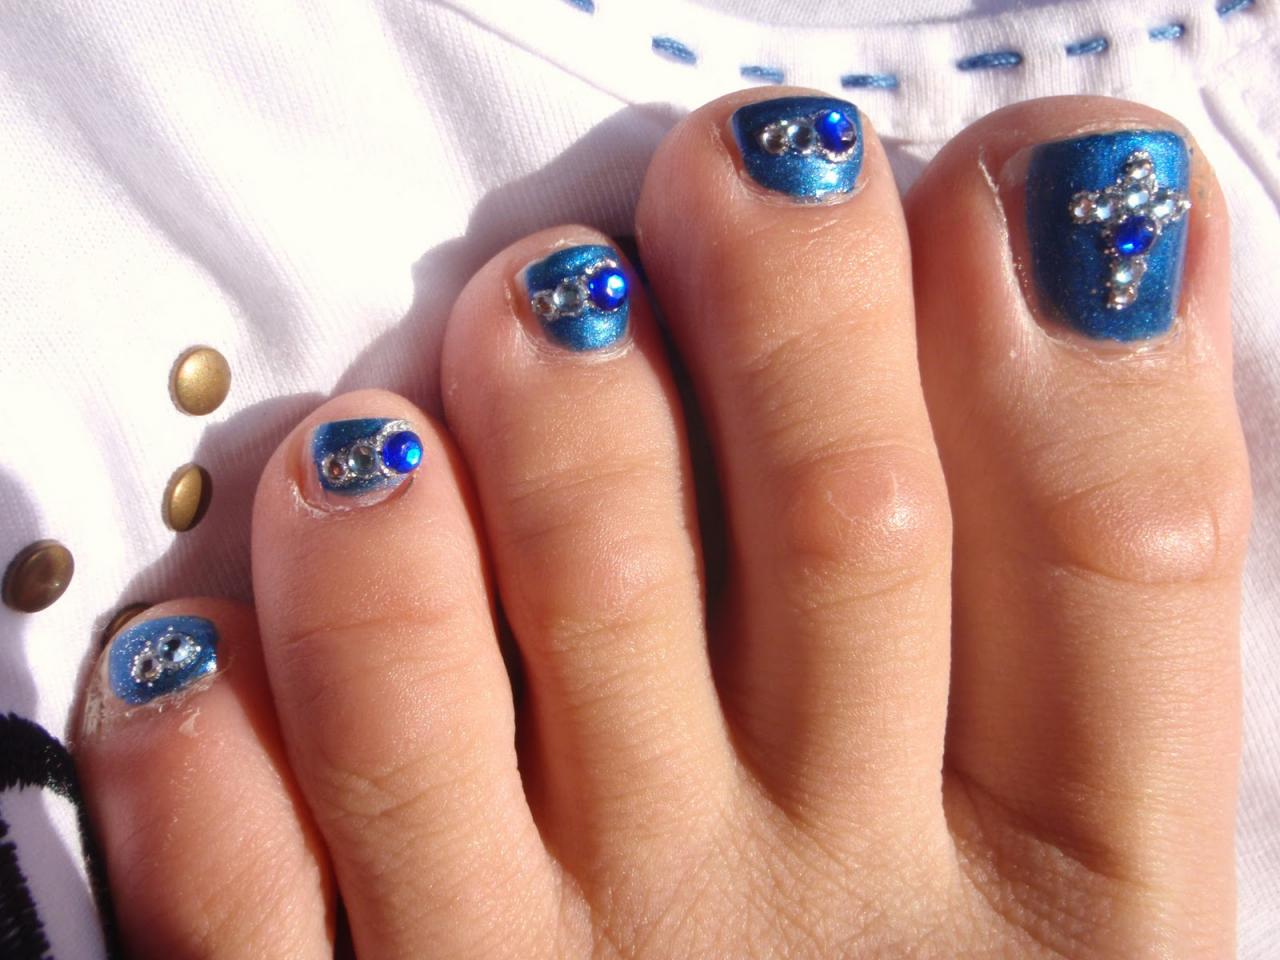 1. Bridal Toe Nail Designs - wide 4